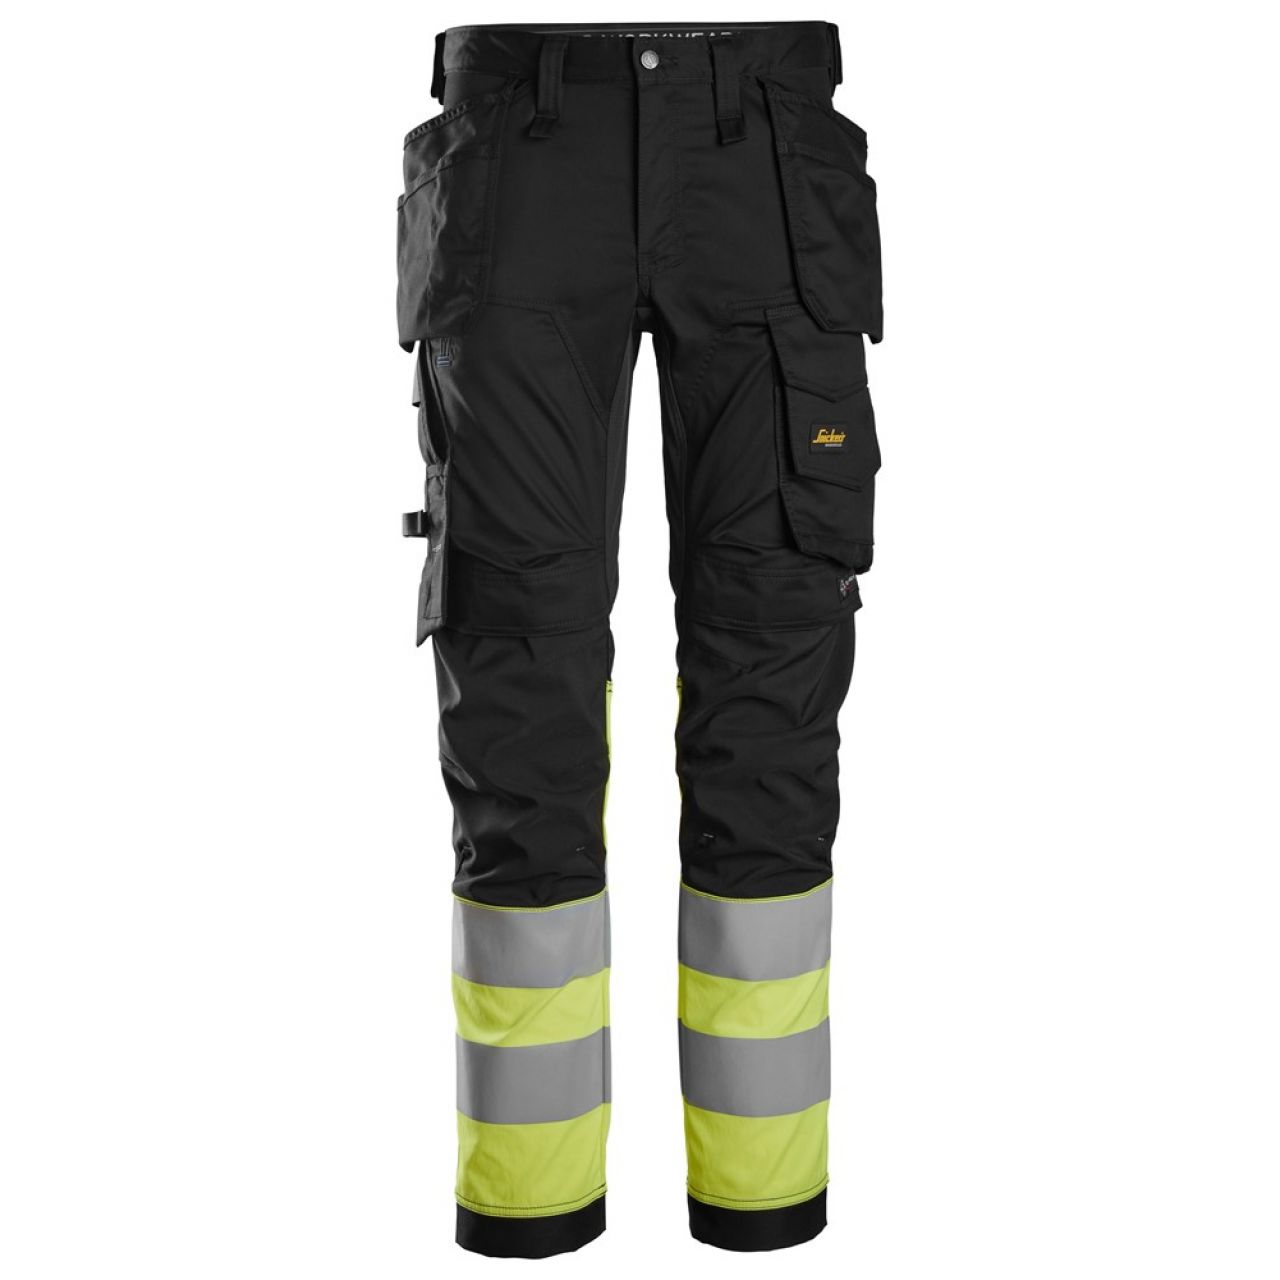 6234 Pantalones largos de trabajo elásticos de alta visibilidad clase 1 con bolsillos flotantes negro-amarillo talla 116